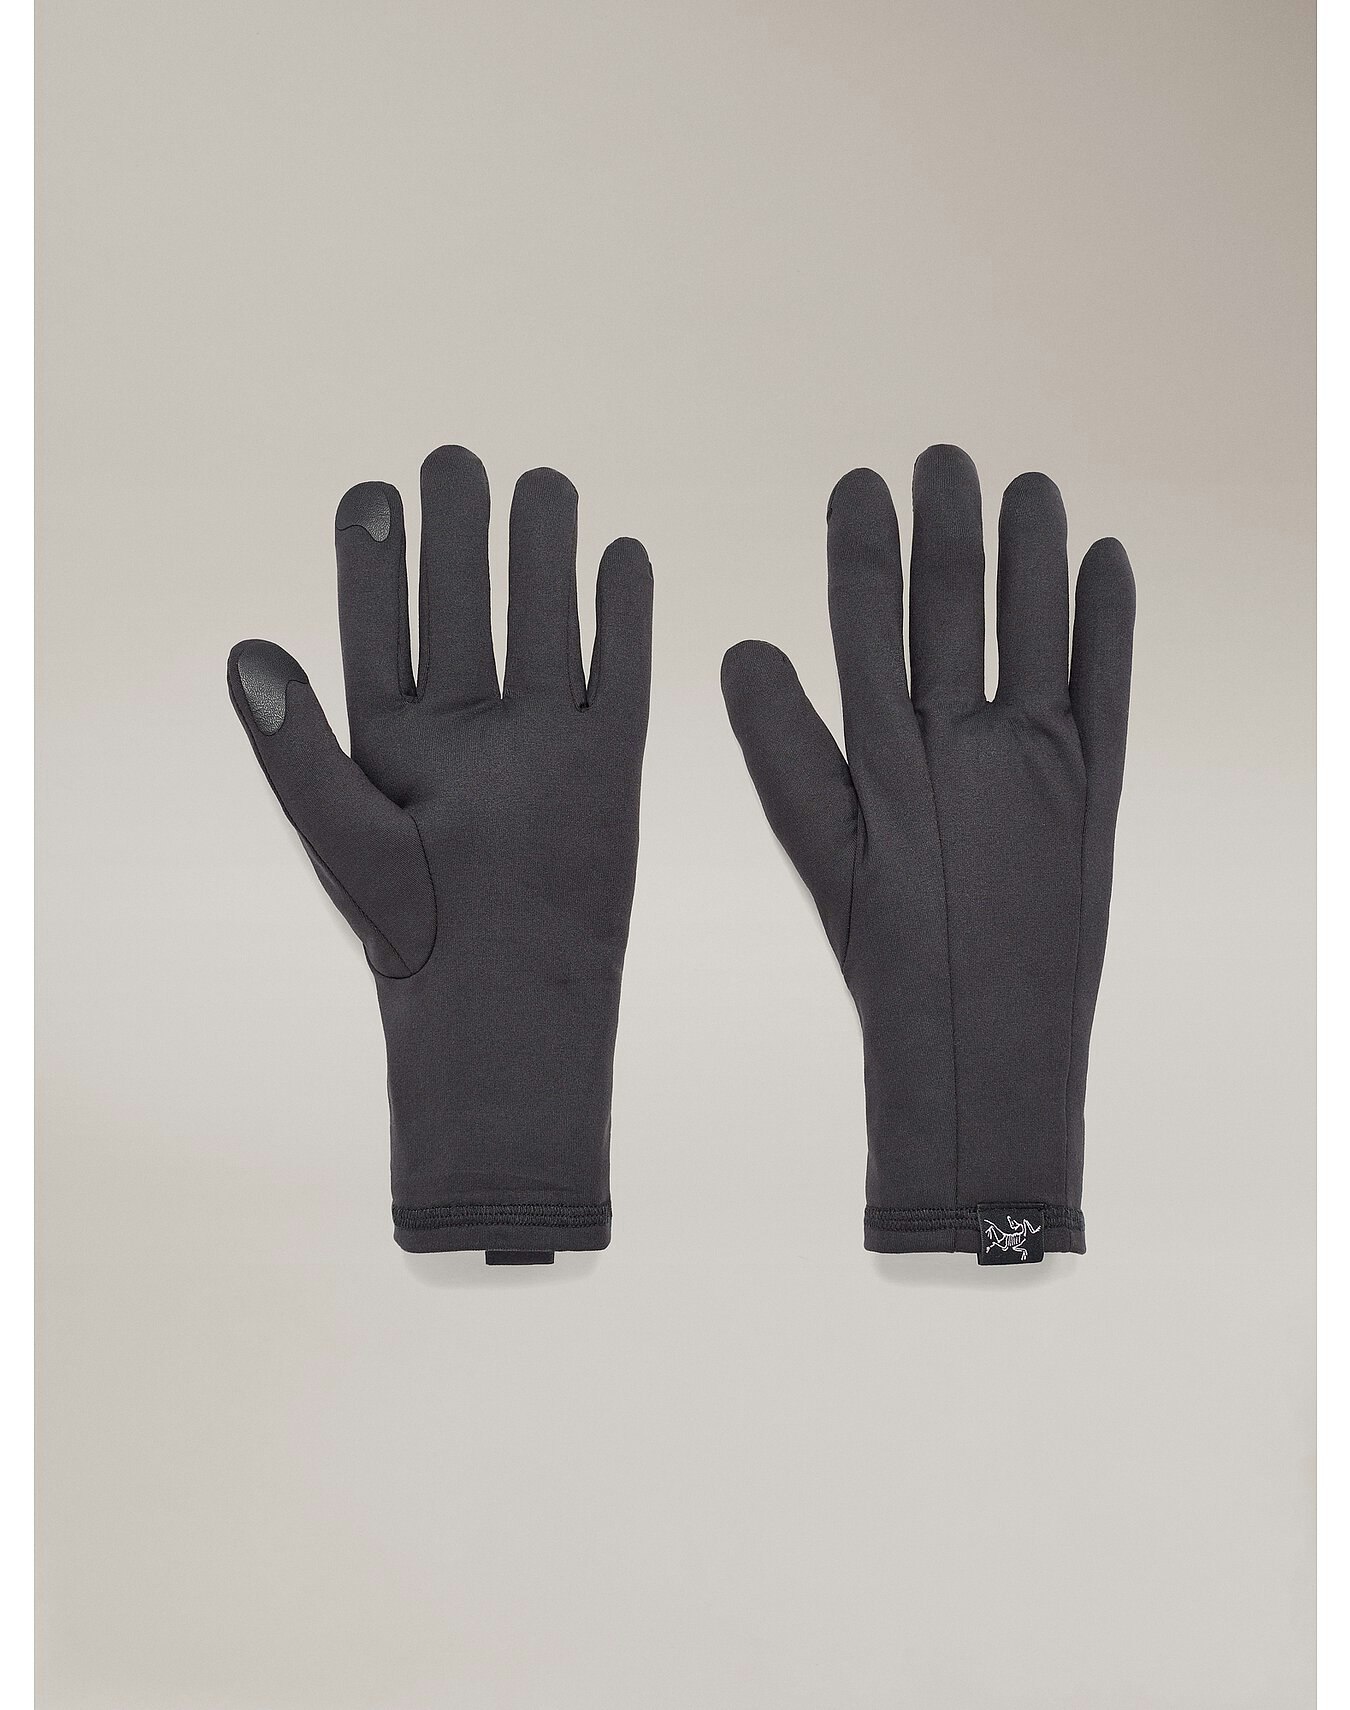 Rho Glove Black